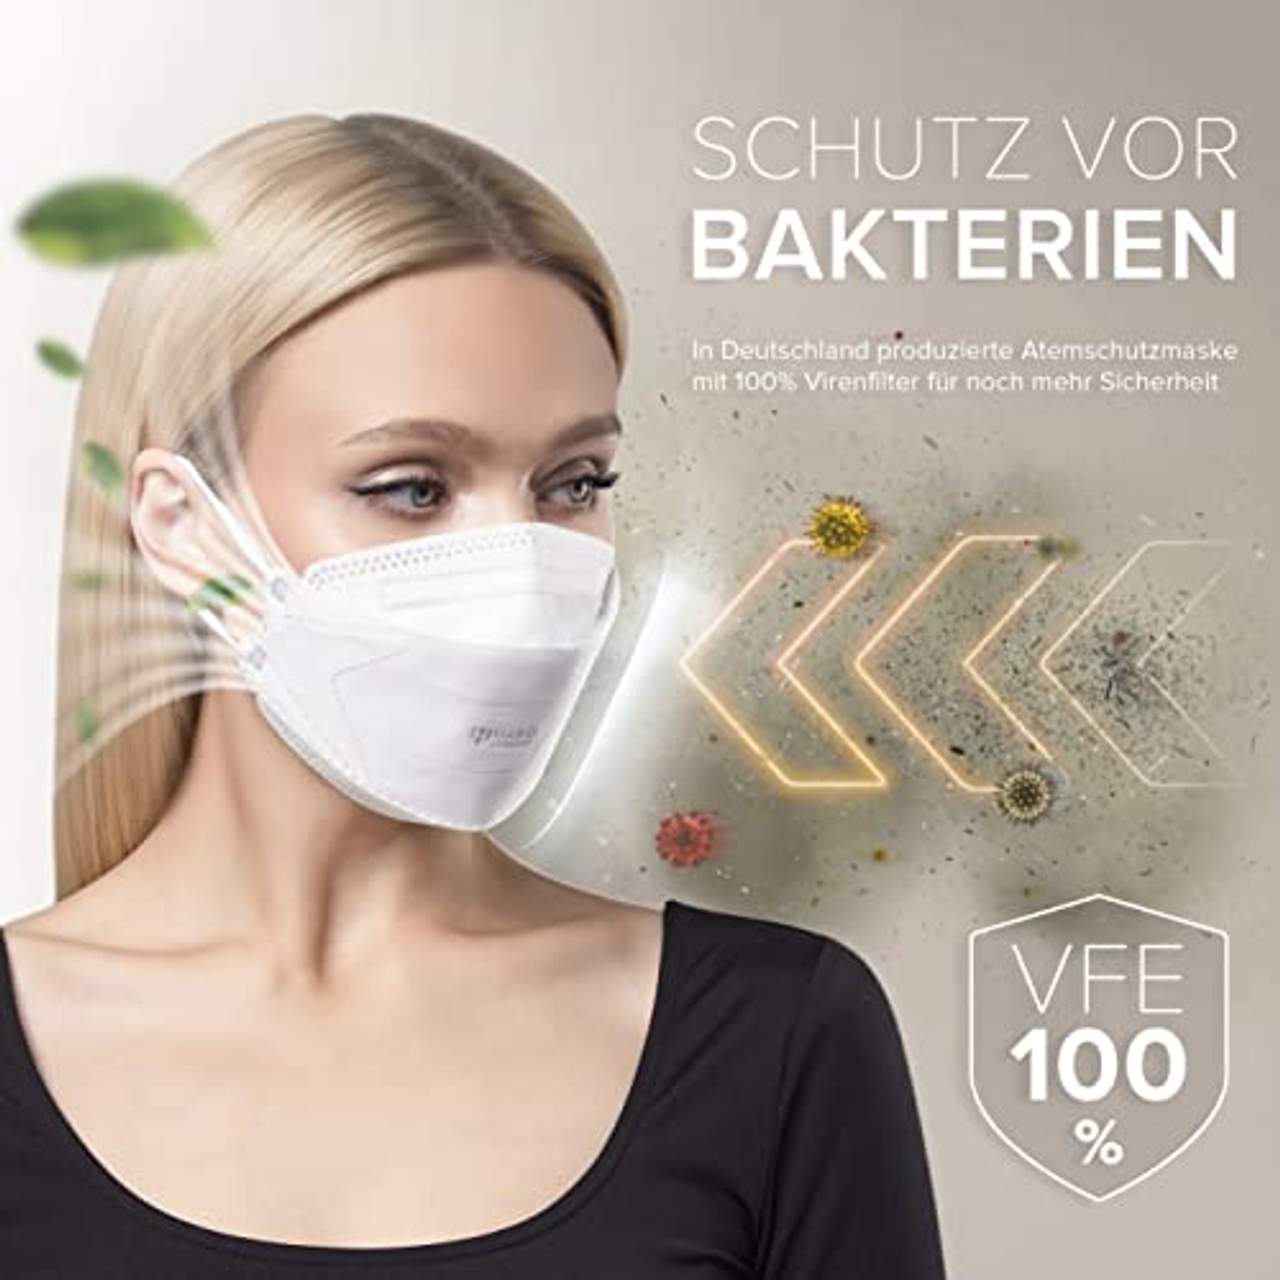 HARD 100 Stück FFP2 Atemschutzmaske Made in Germany